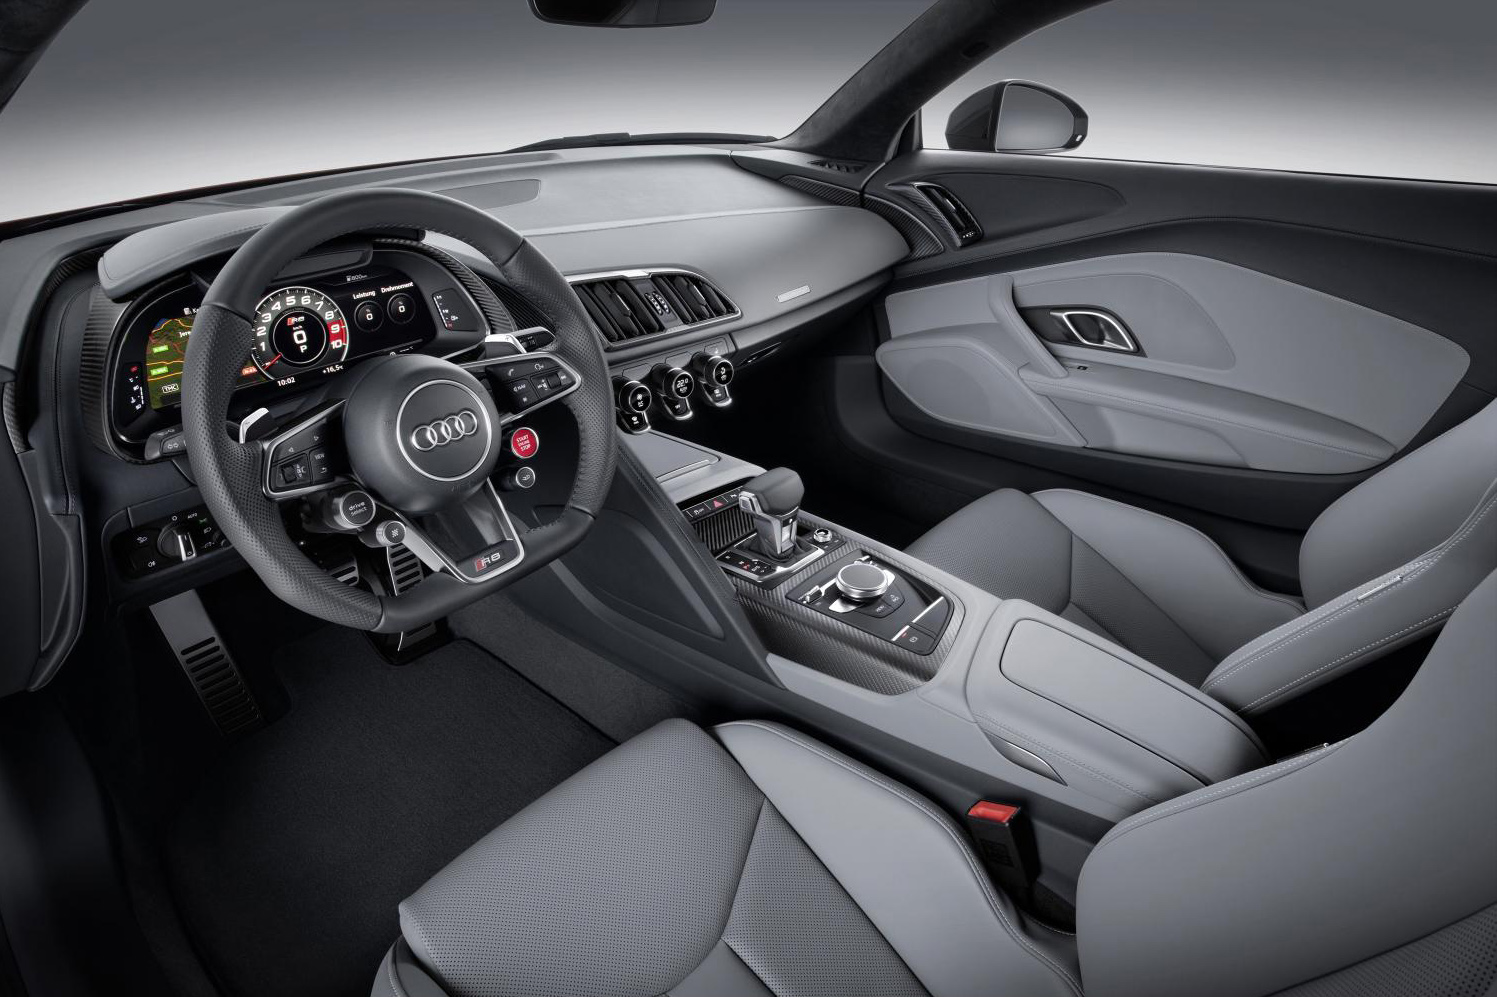 The new Audi R8 V10 Plus